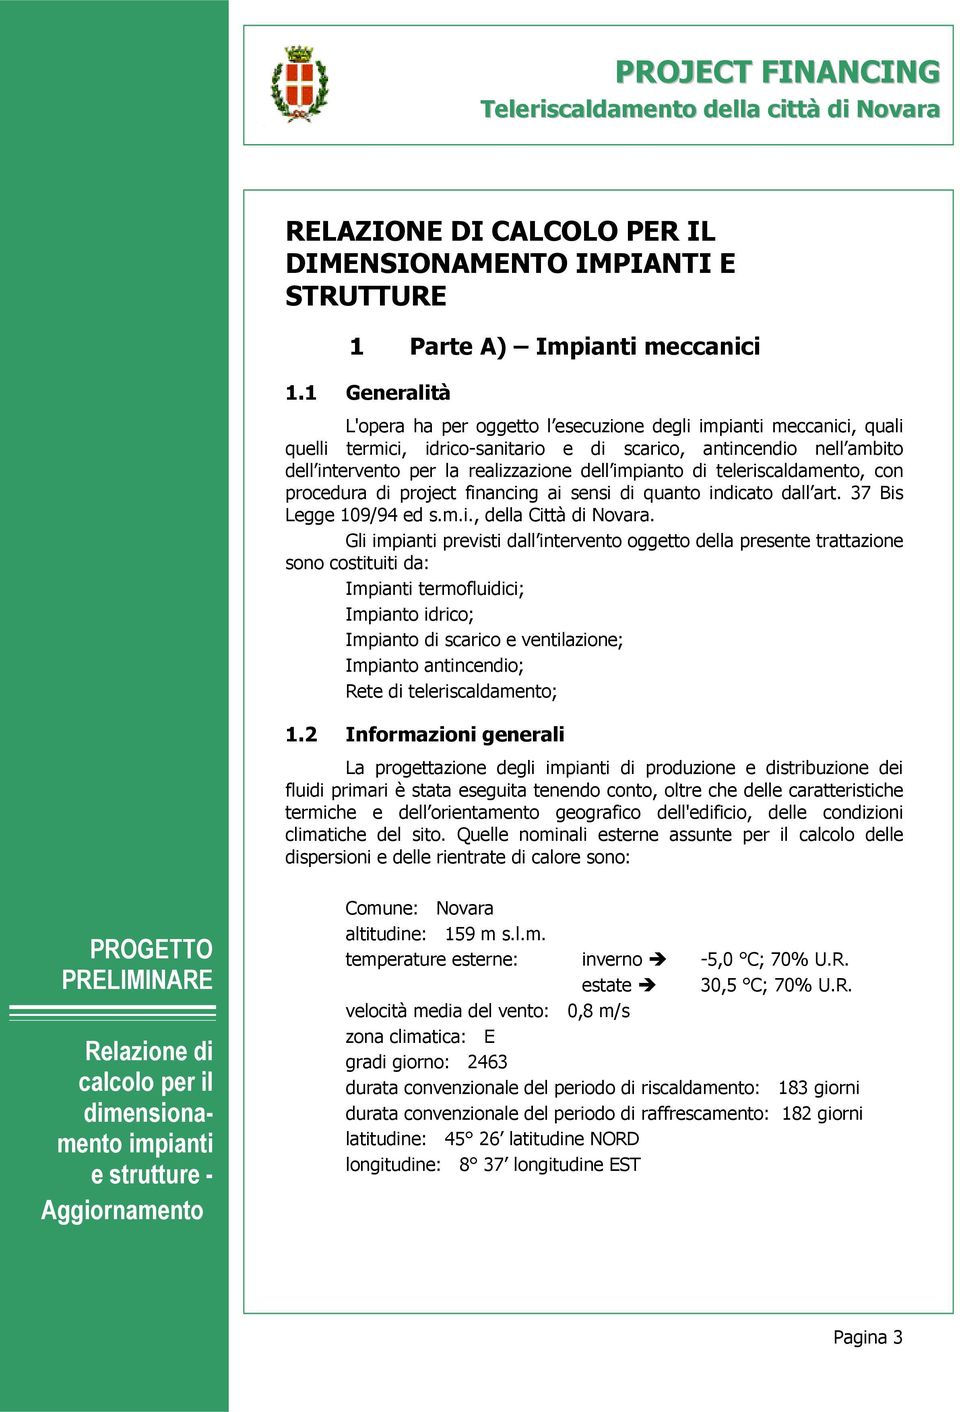 teleriscaldamento, con procedura di project financing ai sensi di quanto indicato dall art. 37 Bis Legge 109/94 ed s.m.i., della Città di Novara.